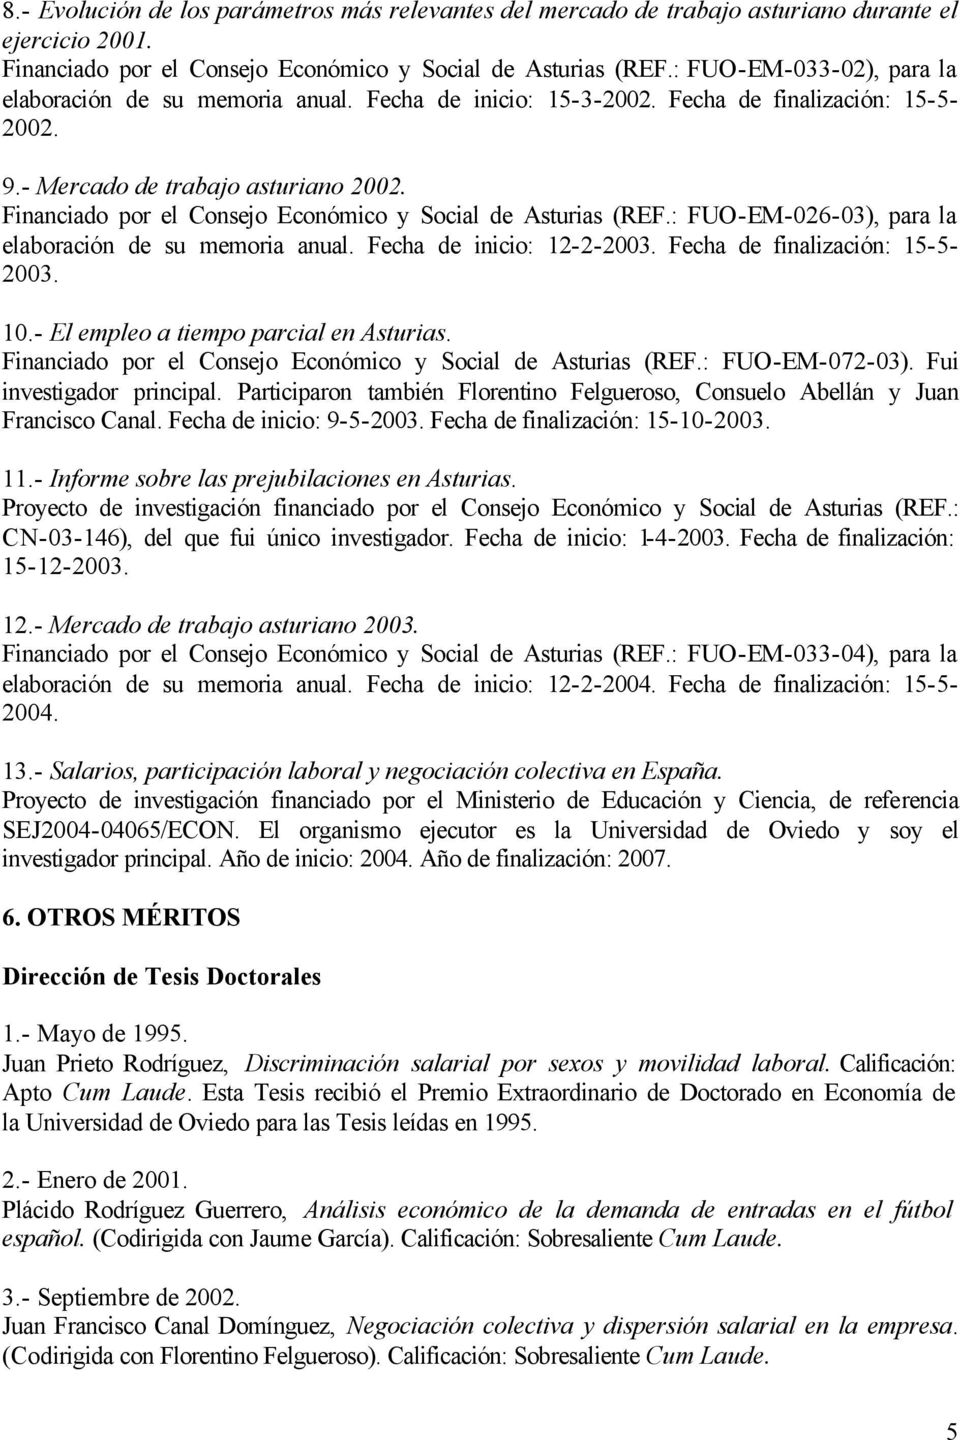 Financiado por el Consejo Económico y Social de Asturias (REF.: FUO-EM-026-03), para la elaboración de su memoria anual. Fecha de inicio: 12-2-2003. Fecha de finalización: 15-5- 2003. 10.